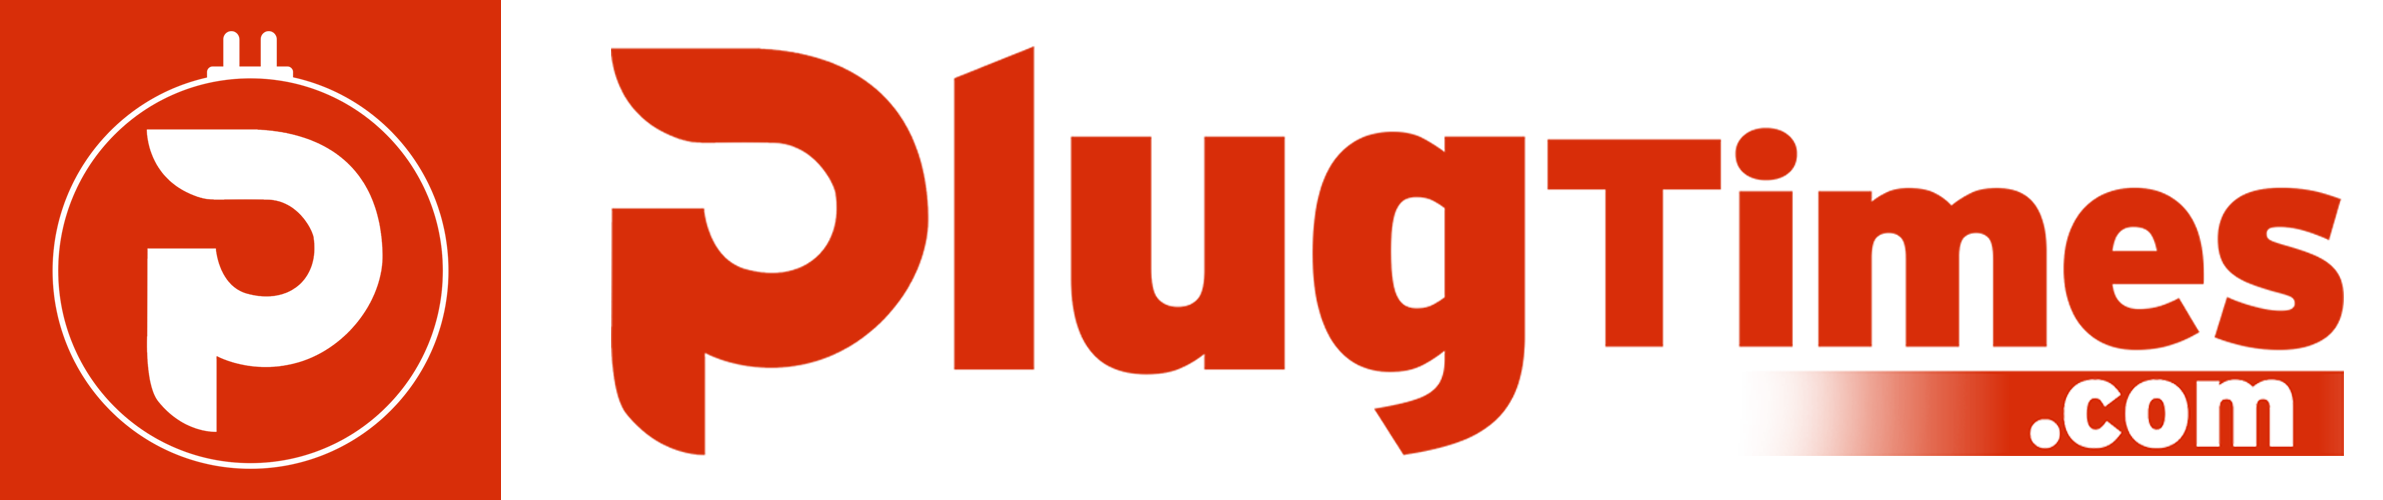 PlugTimes.com logo